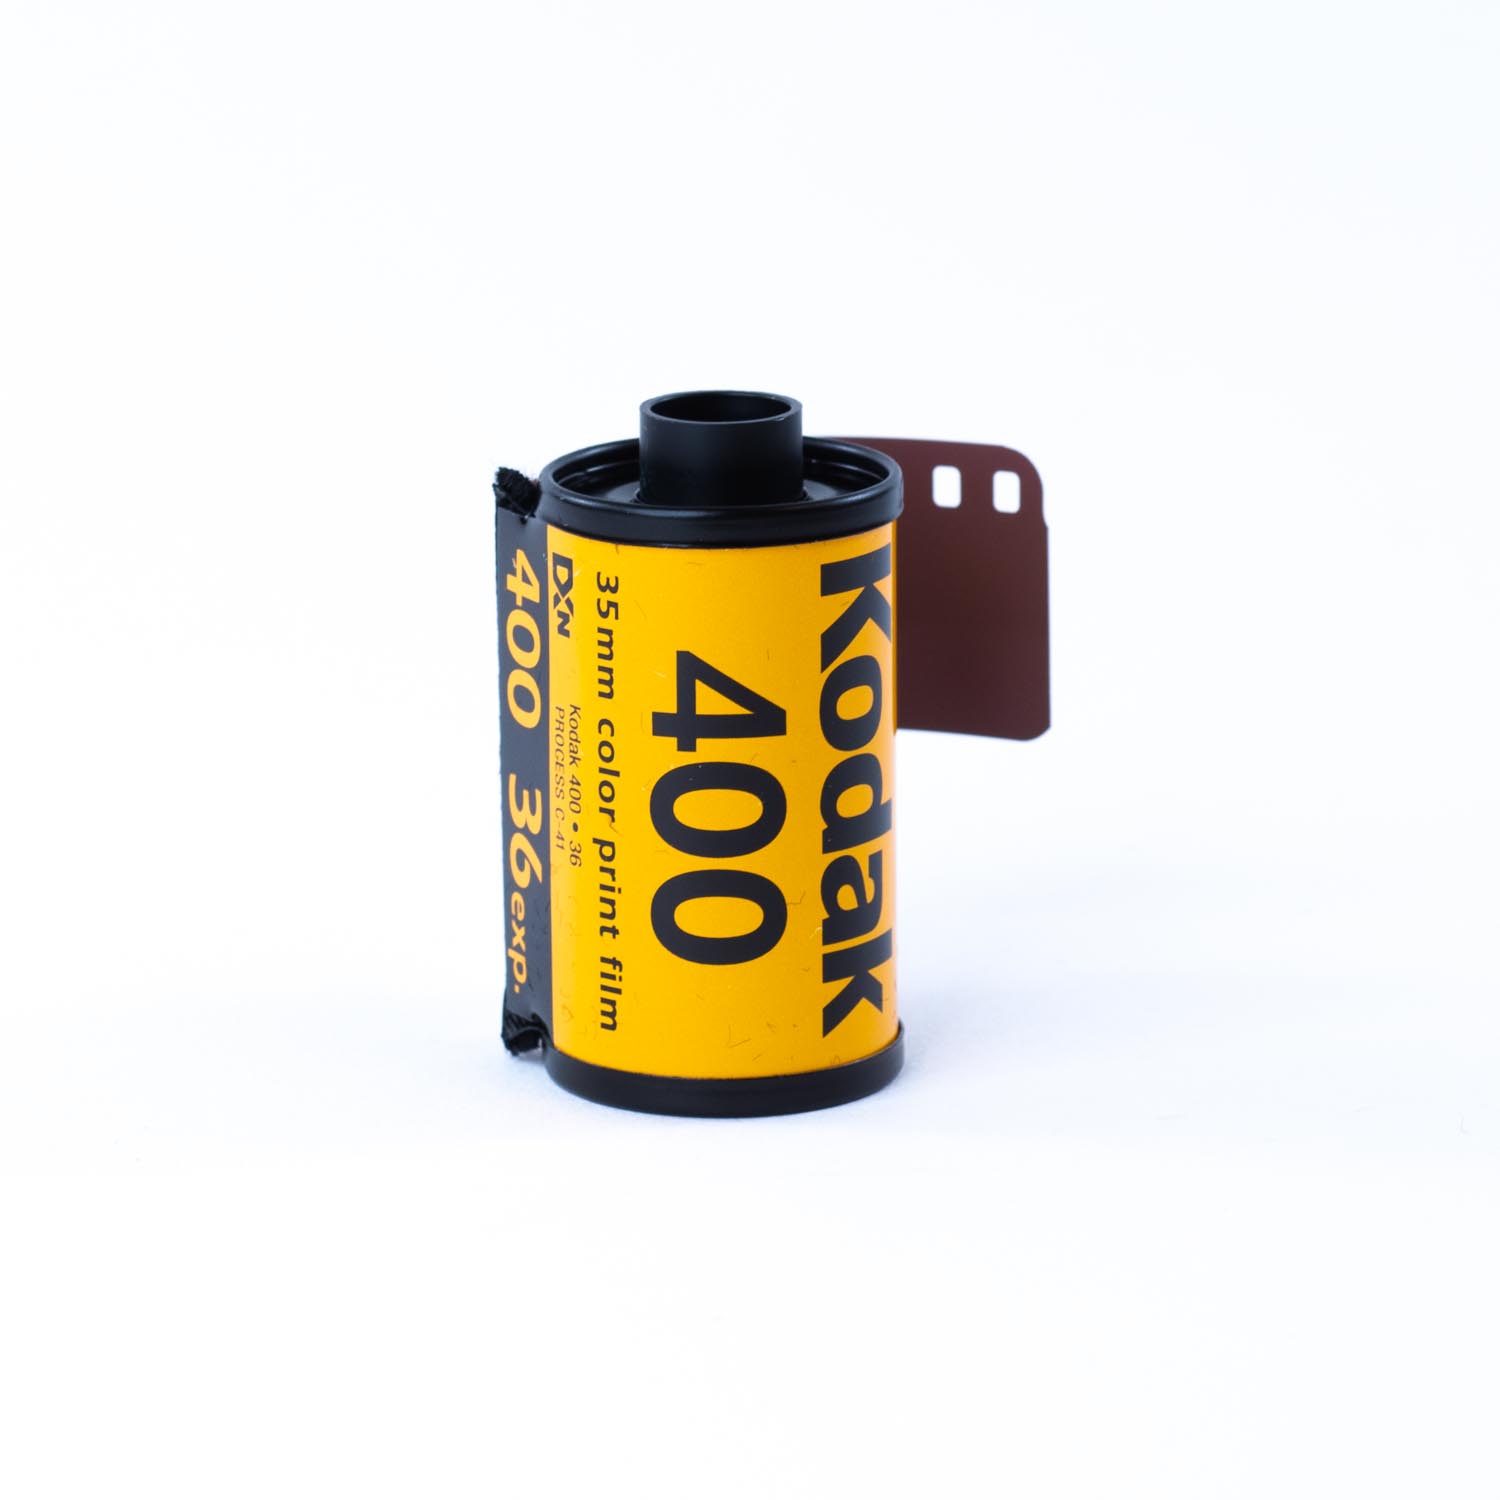 Kodak UltraMax 400 Film négatif couleur  (rouleau de film 35 mm, 36 expositions)